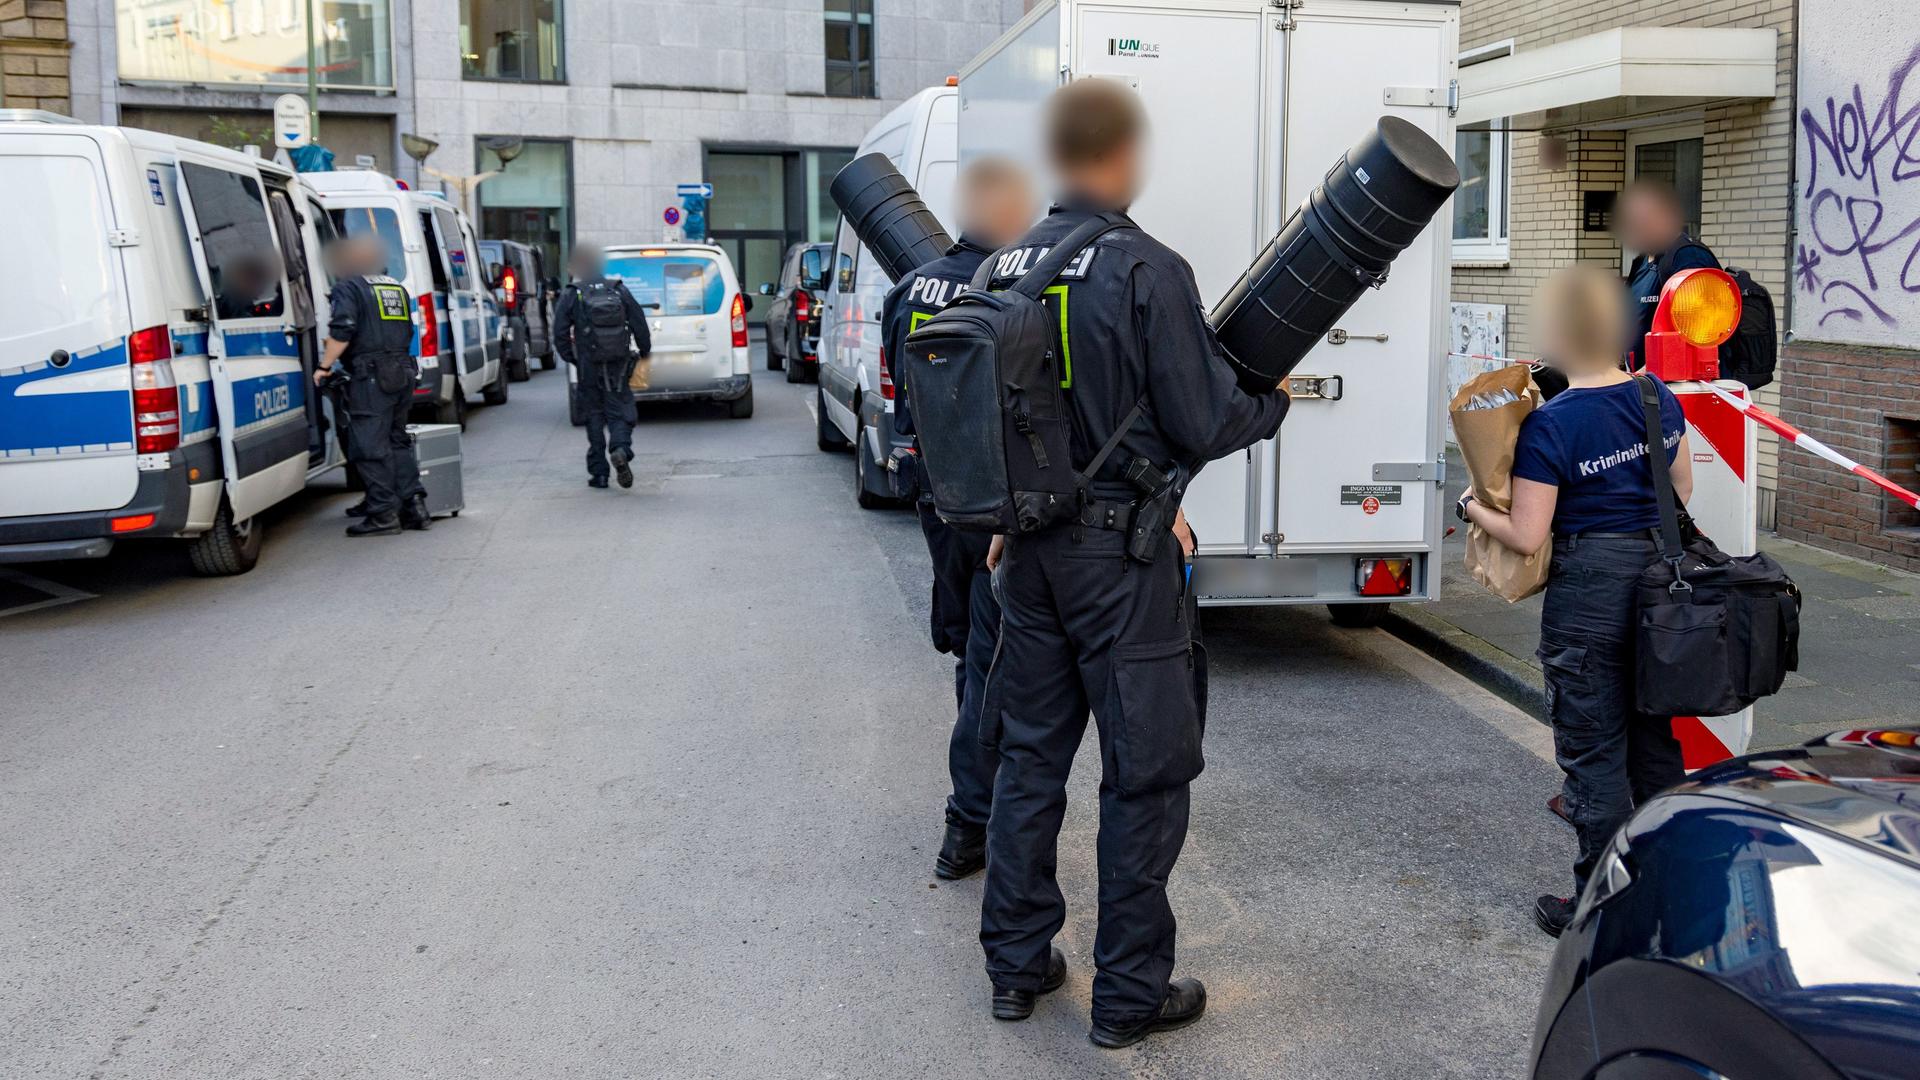 Nordrhein-Westfalen: Schlüsselanhänger, Polizei Nordrhein